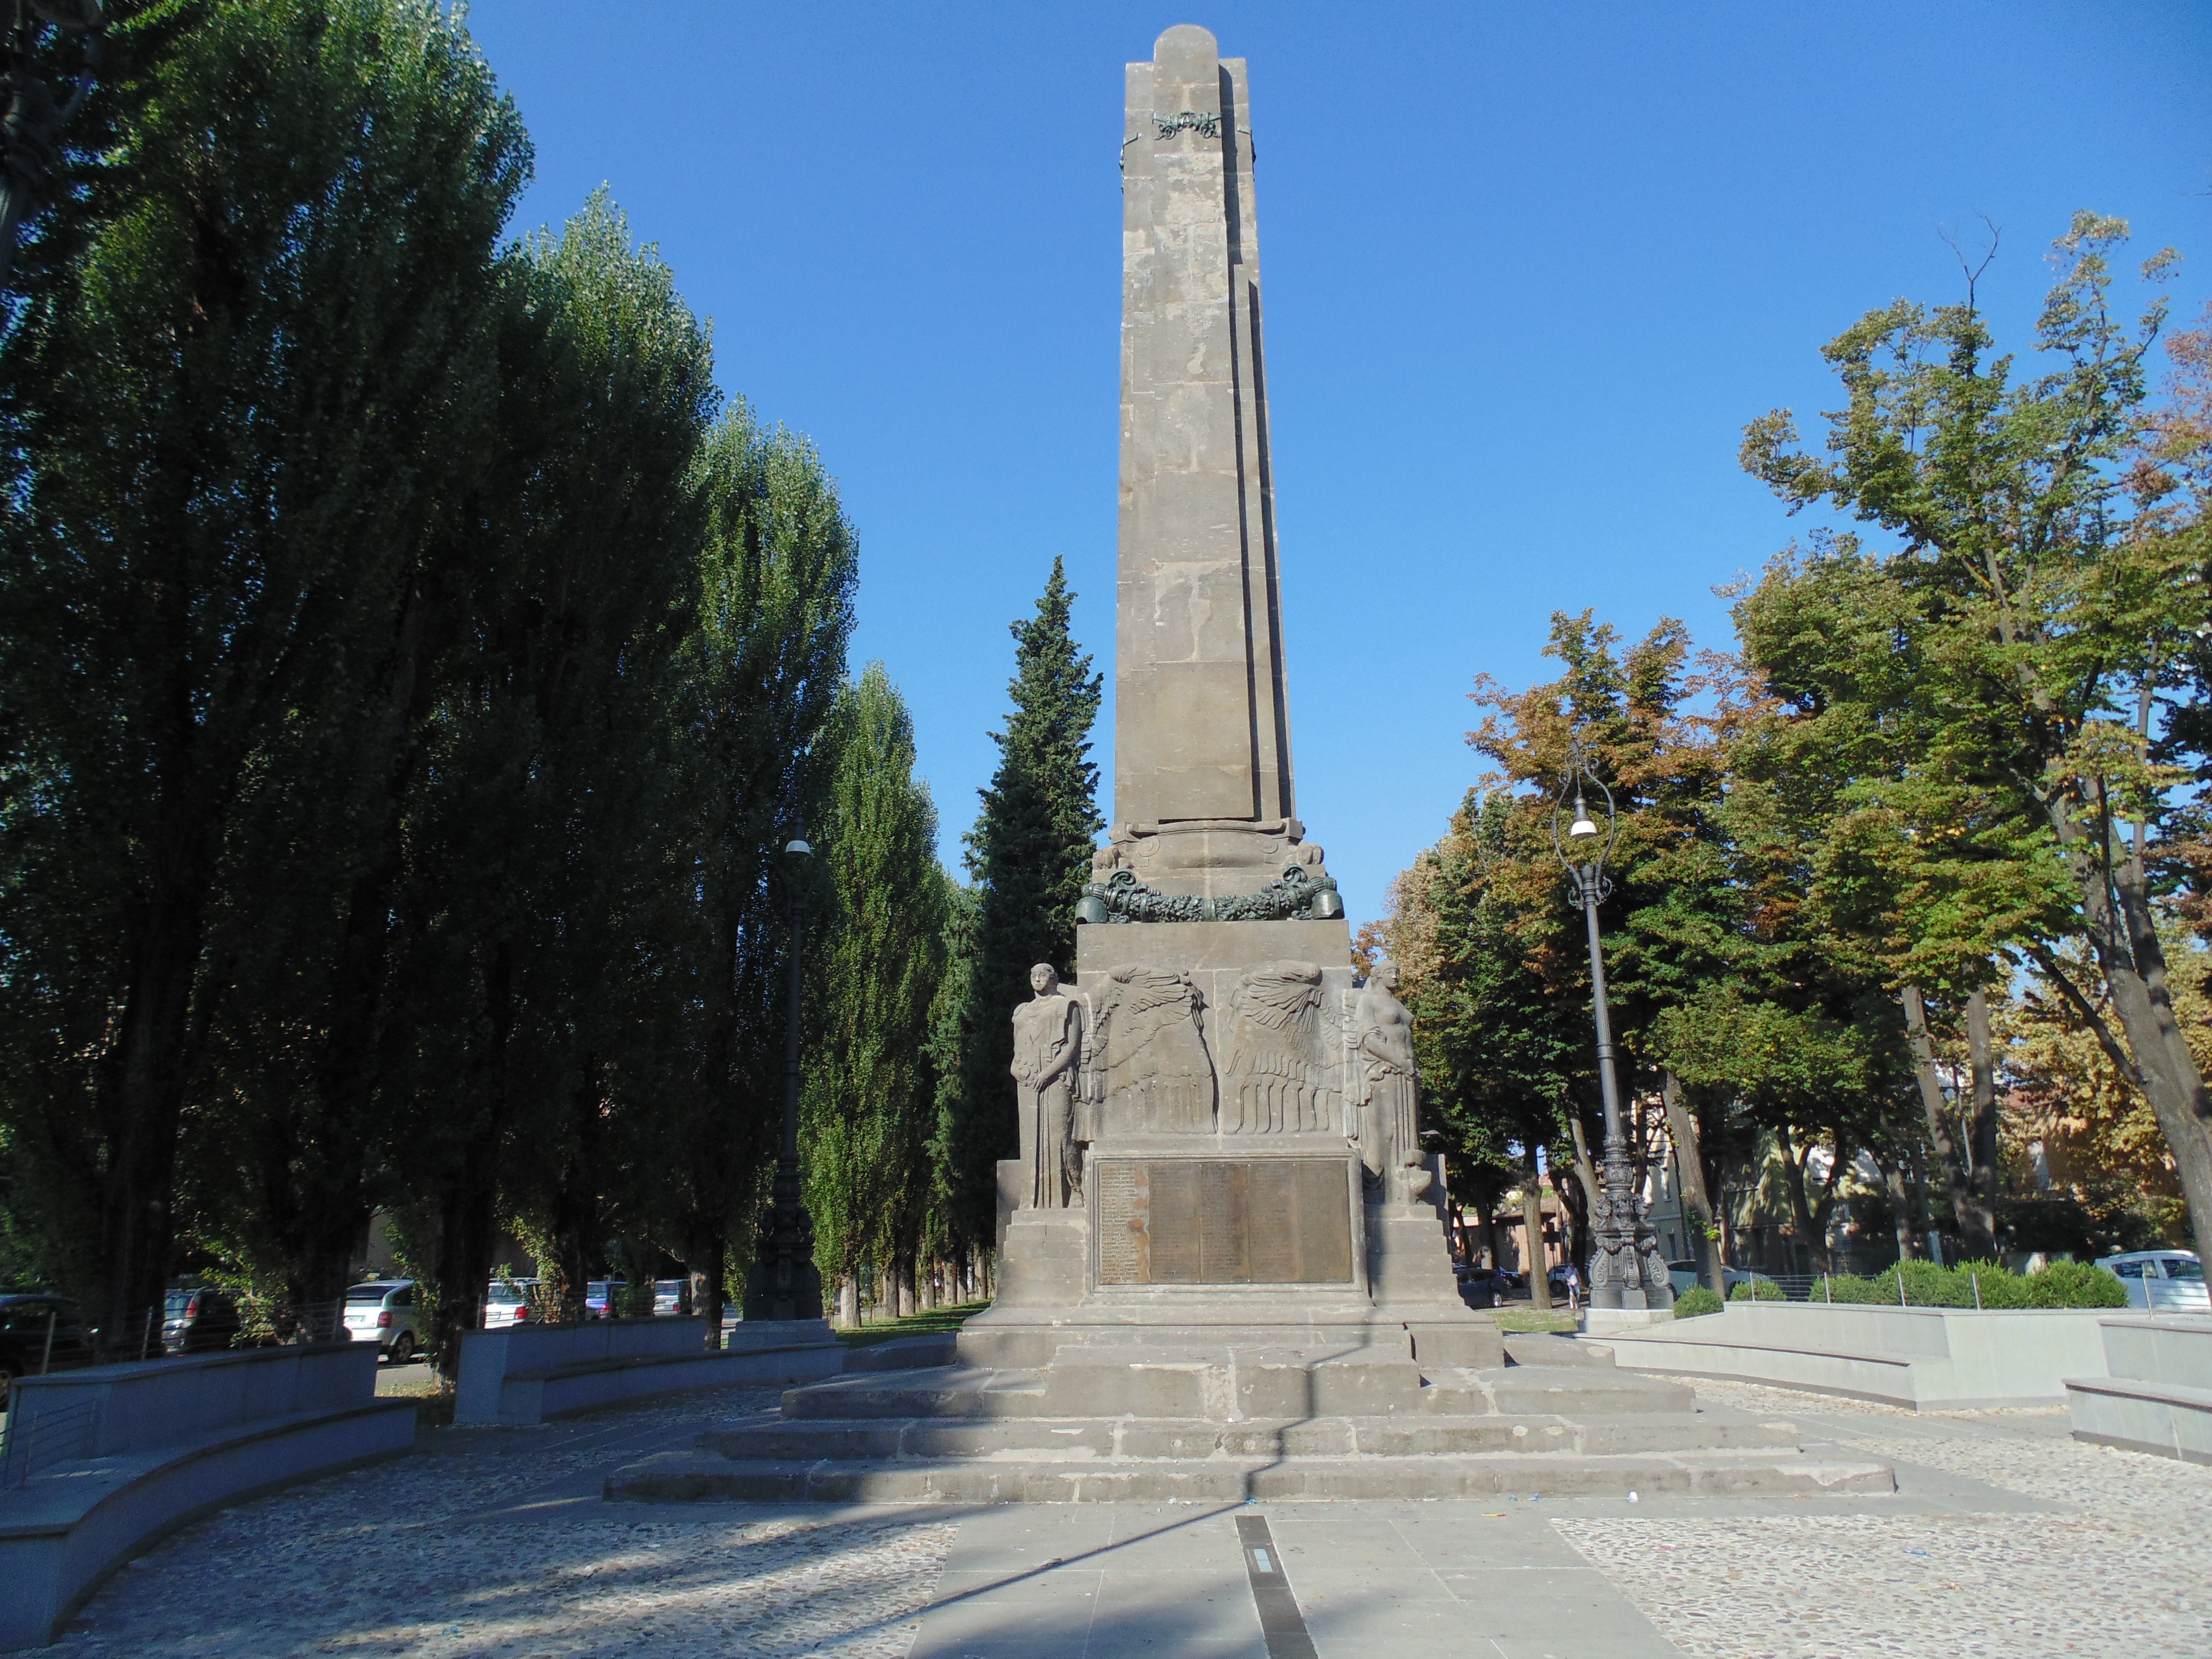 photo: https://upload.wikimedia.org/wikipedia/commons/7/7b/Monumento_ai_Caduti_della_prima_guerra_mondiale_%28panoramica%29.JPG